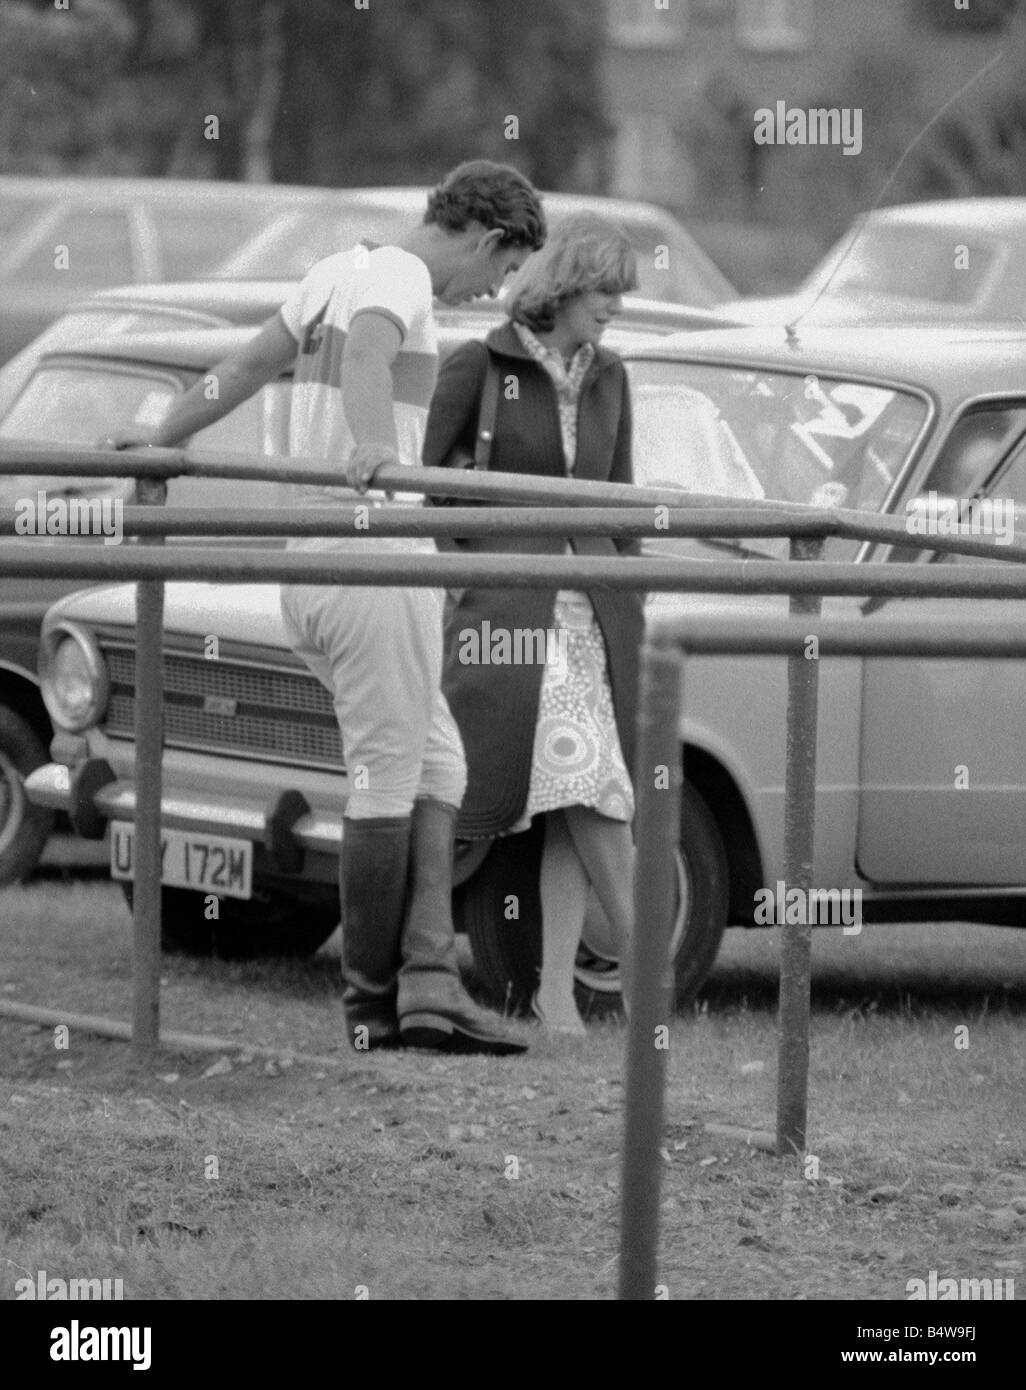 Le Prince Charles se penche en arrière sur les rampes pour qu'il s'entretient avec Camilla Parker Bowles lors d'une pause dans un jeu de polo à Windsor Great Park Royal Prince de Galles copine Sport1975 juin 1970 Mirrorpix Banque D'Images